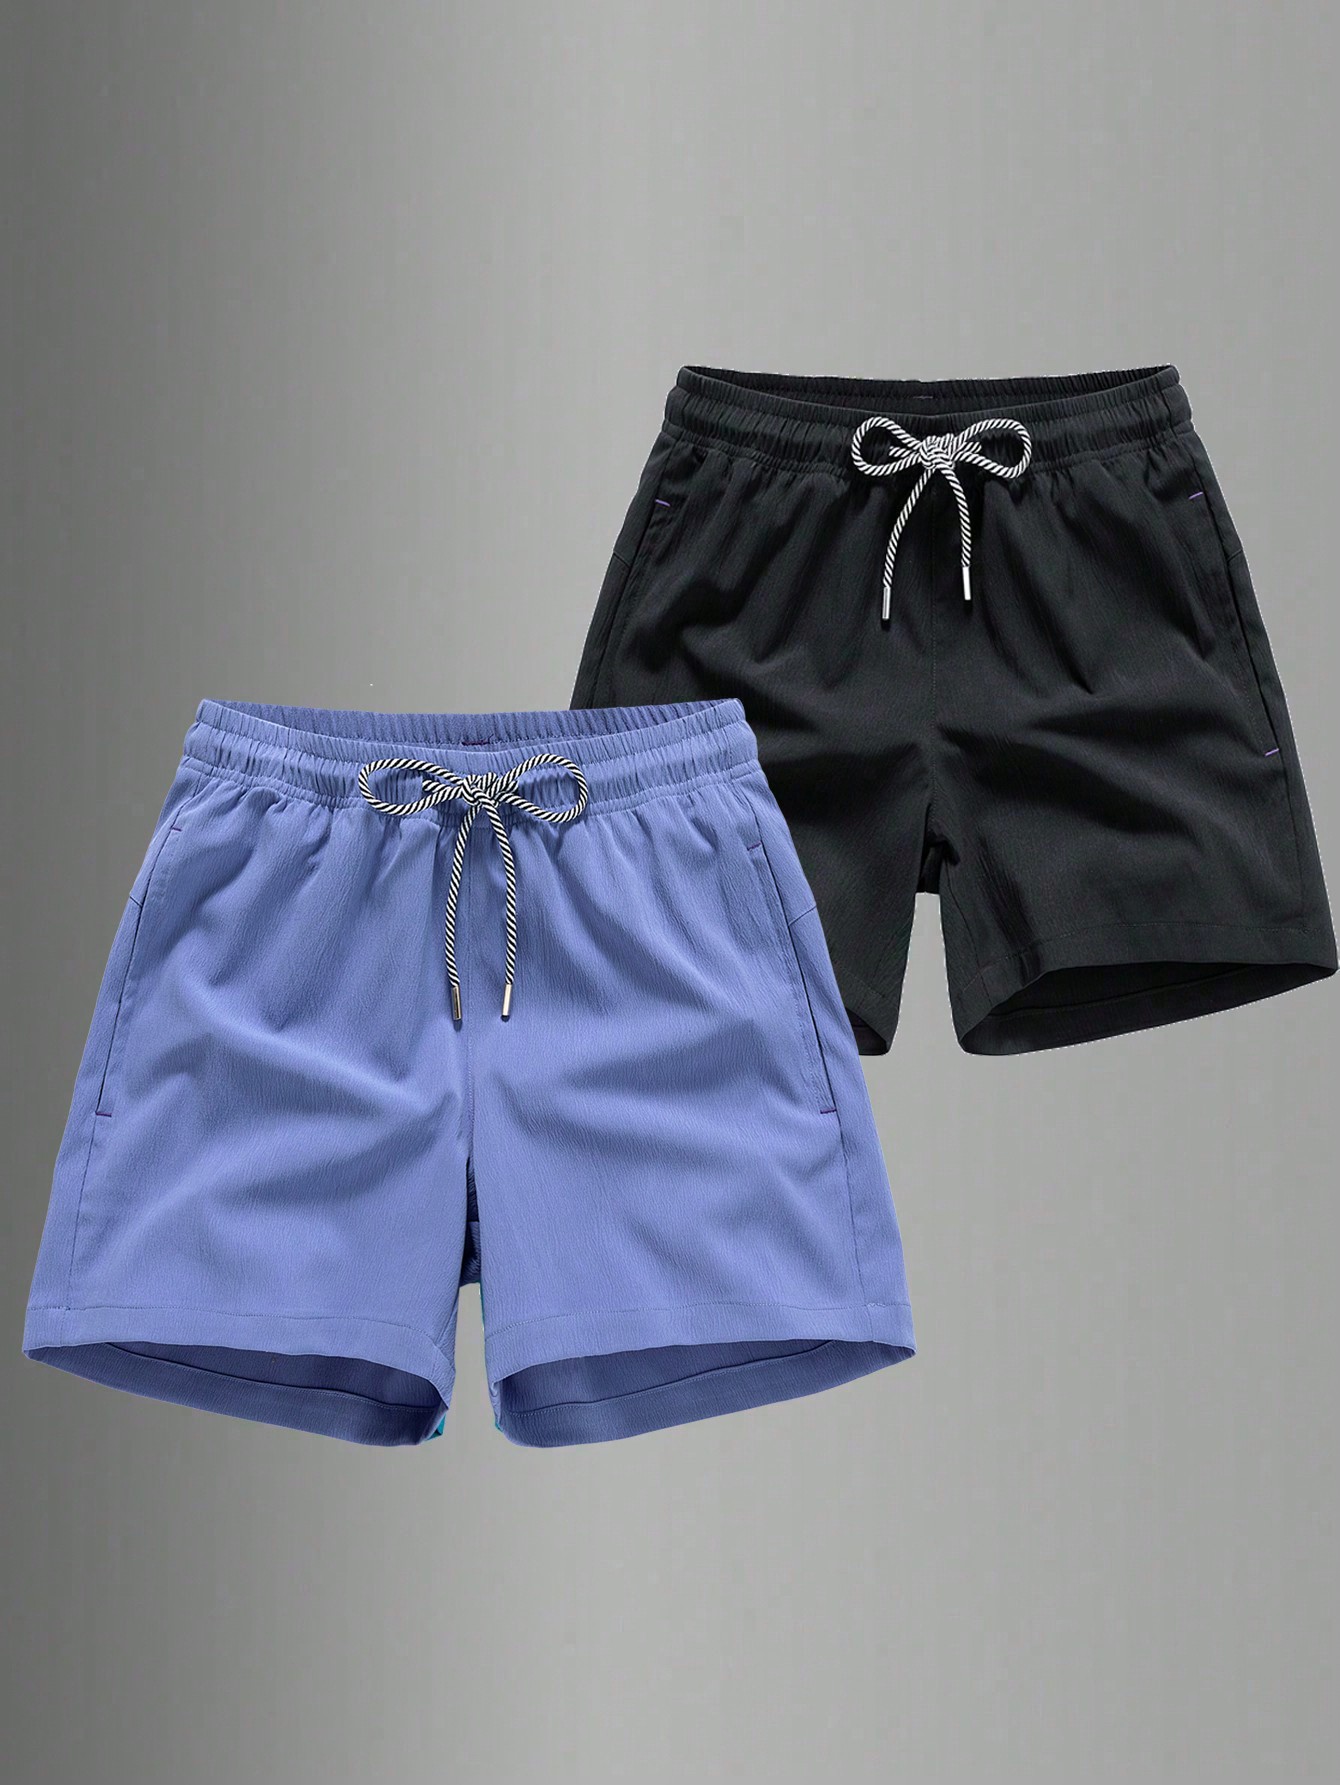 Мужские быстросохнущие спортивные шорты с завязками на талии для пляжного отдыха или тренировок, фиолетовый фотографии